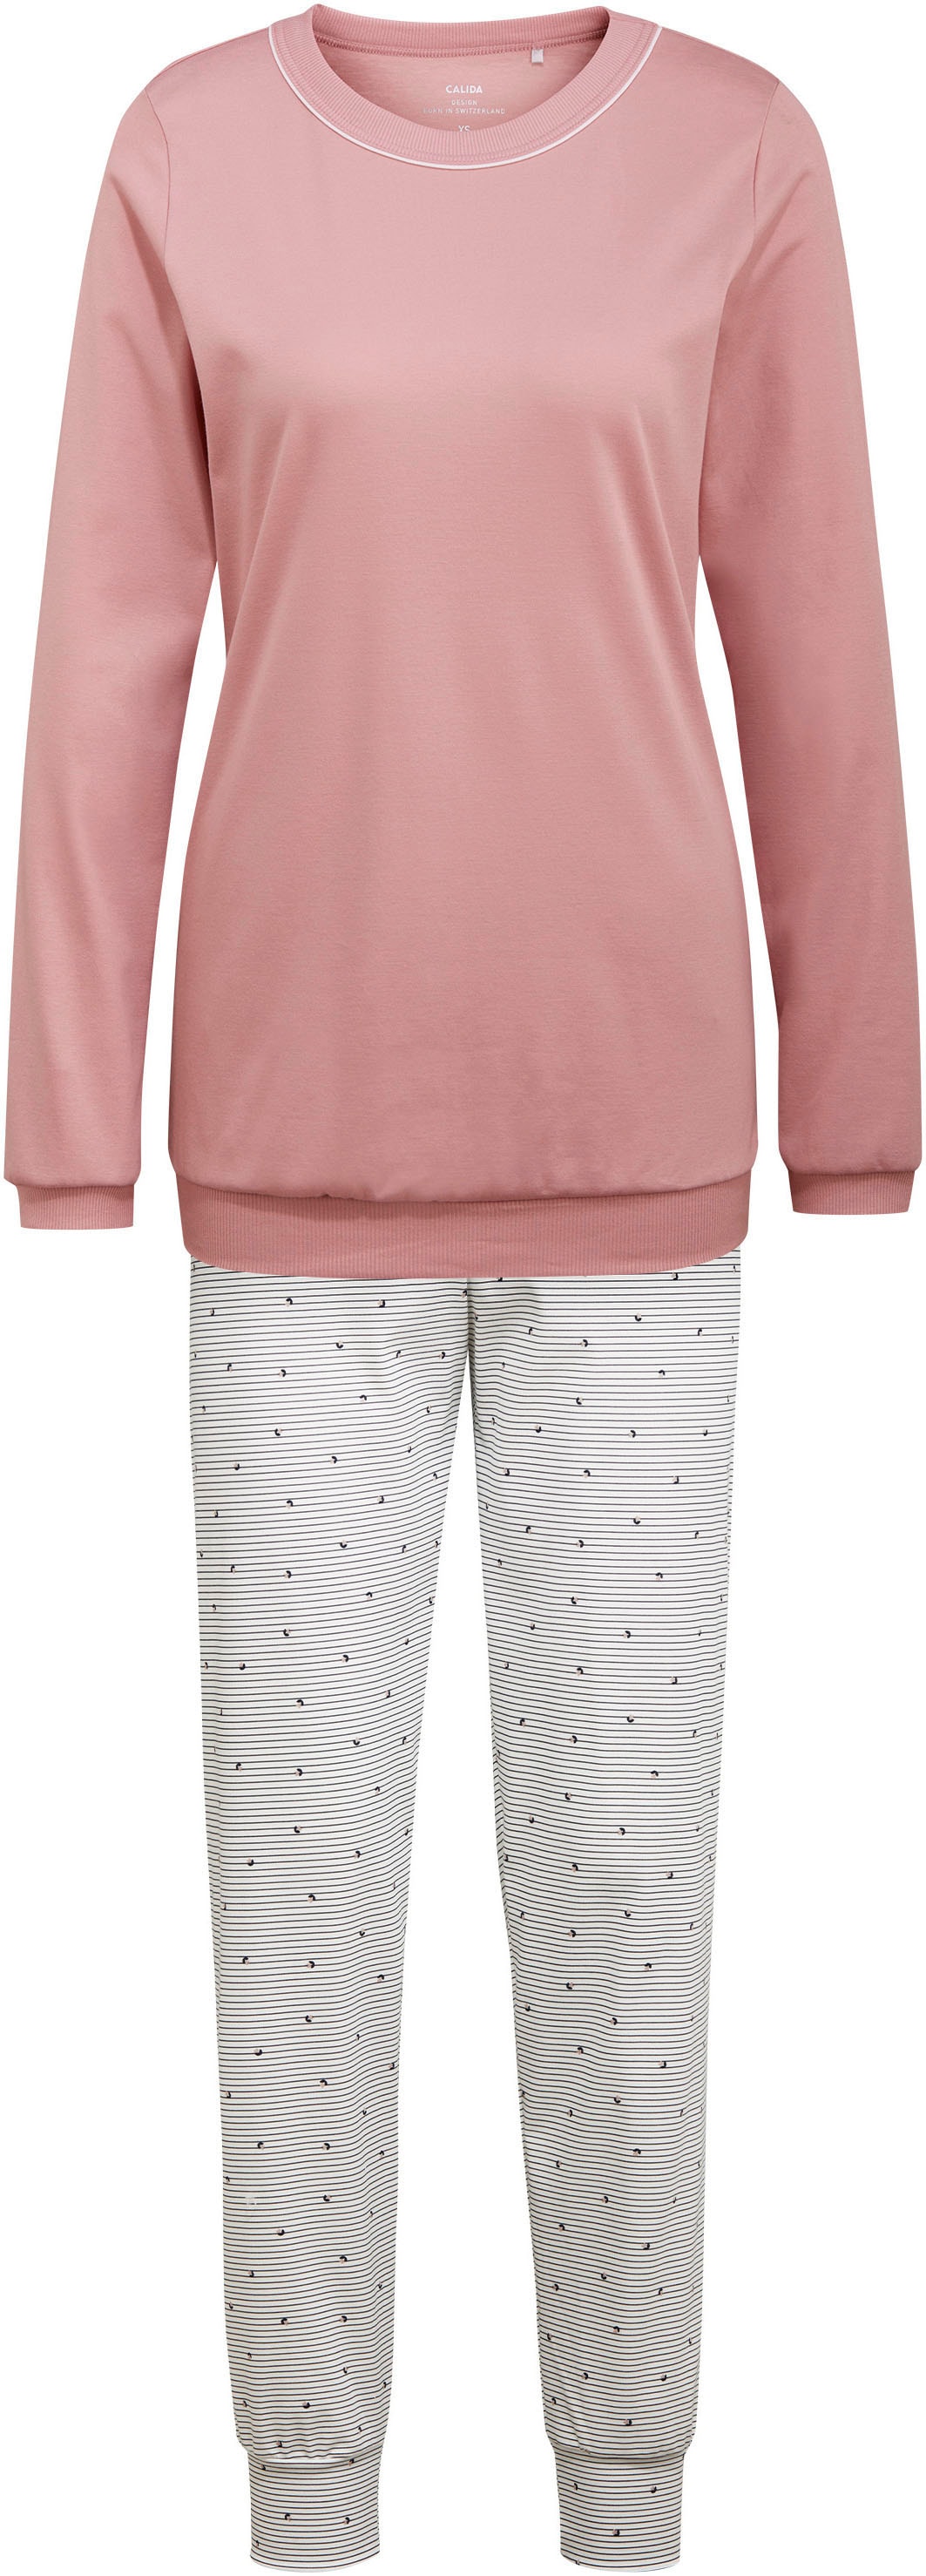 CALIDA Schlafanzug »Sweet Dreams«, (2 tlg.), Bündchen-Pyjama, feine Streifen und kleine Blümchen auf der Hose